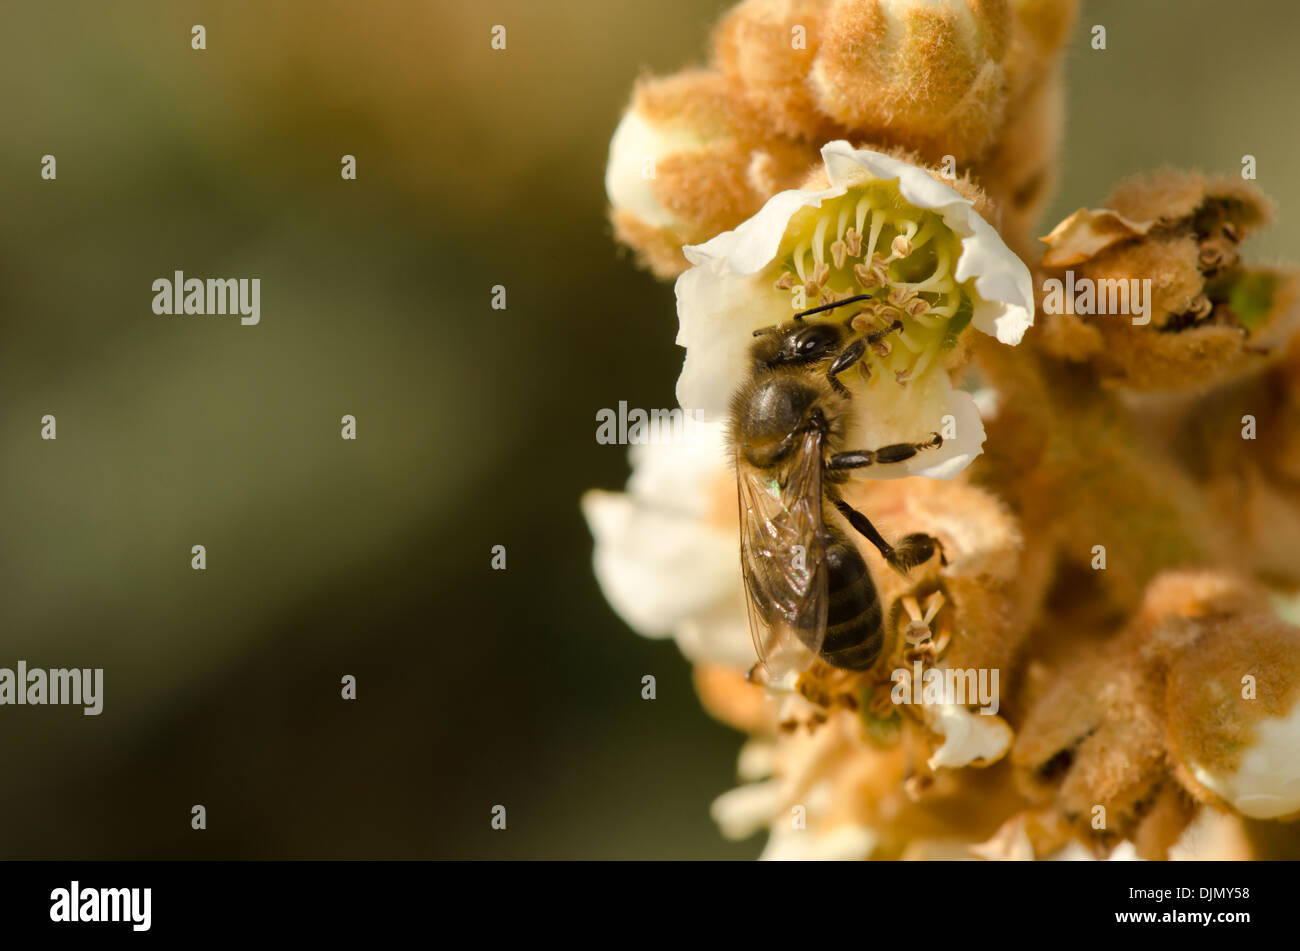 Les travailleurs d'un miel foncé et européenne, de l'abeille Apis mellifera, nourriture dans un fleurissement loquat Eriobotrya japonica,. L'Andalousie, espagne. Banque D'Images